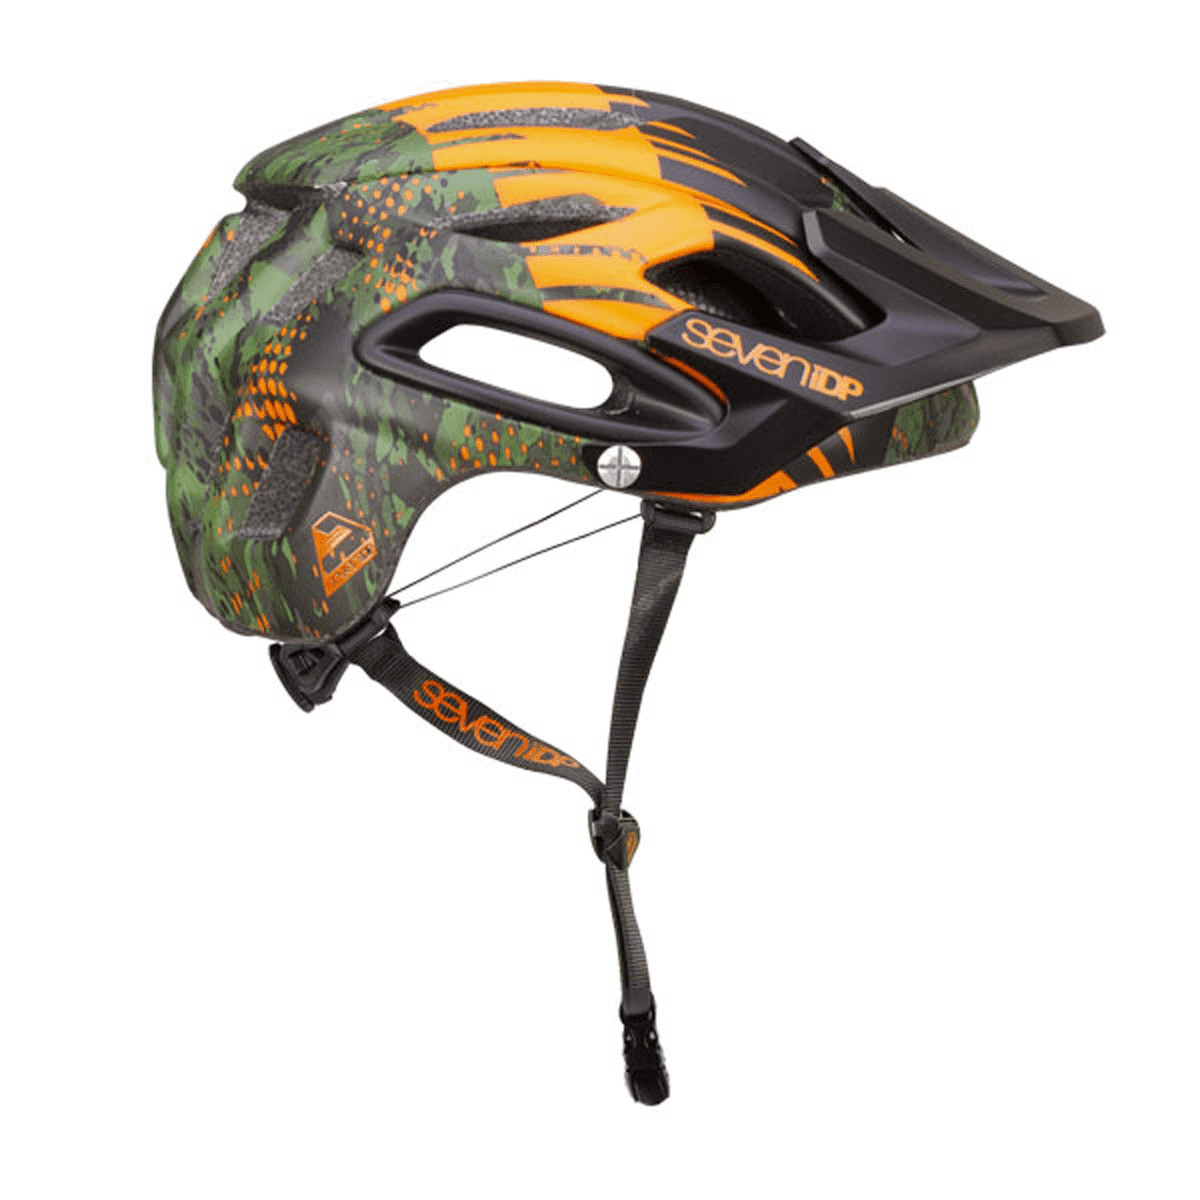 Medium/Large 55-59cm Orange/Black $115 Retail NEW 2018 7iDP M2 MTB Helmet 